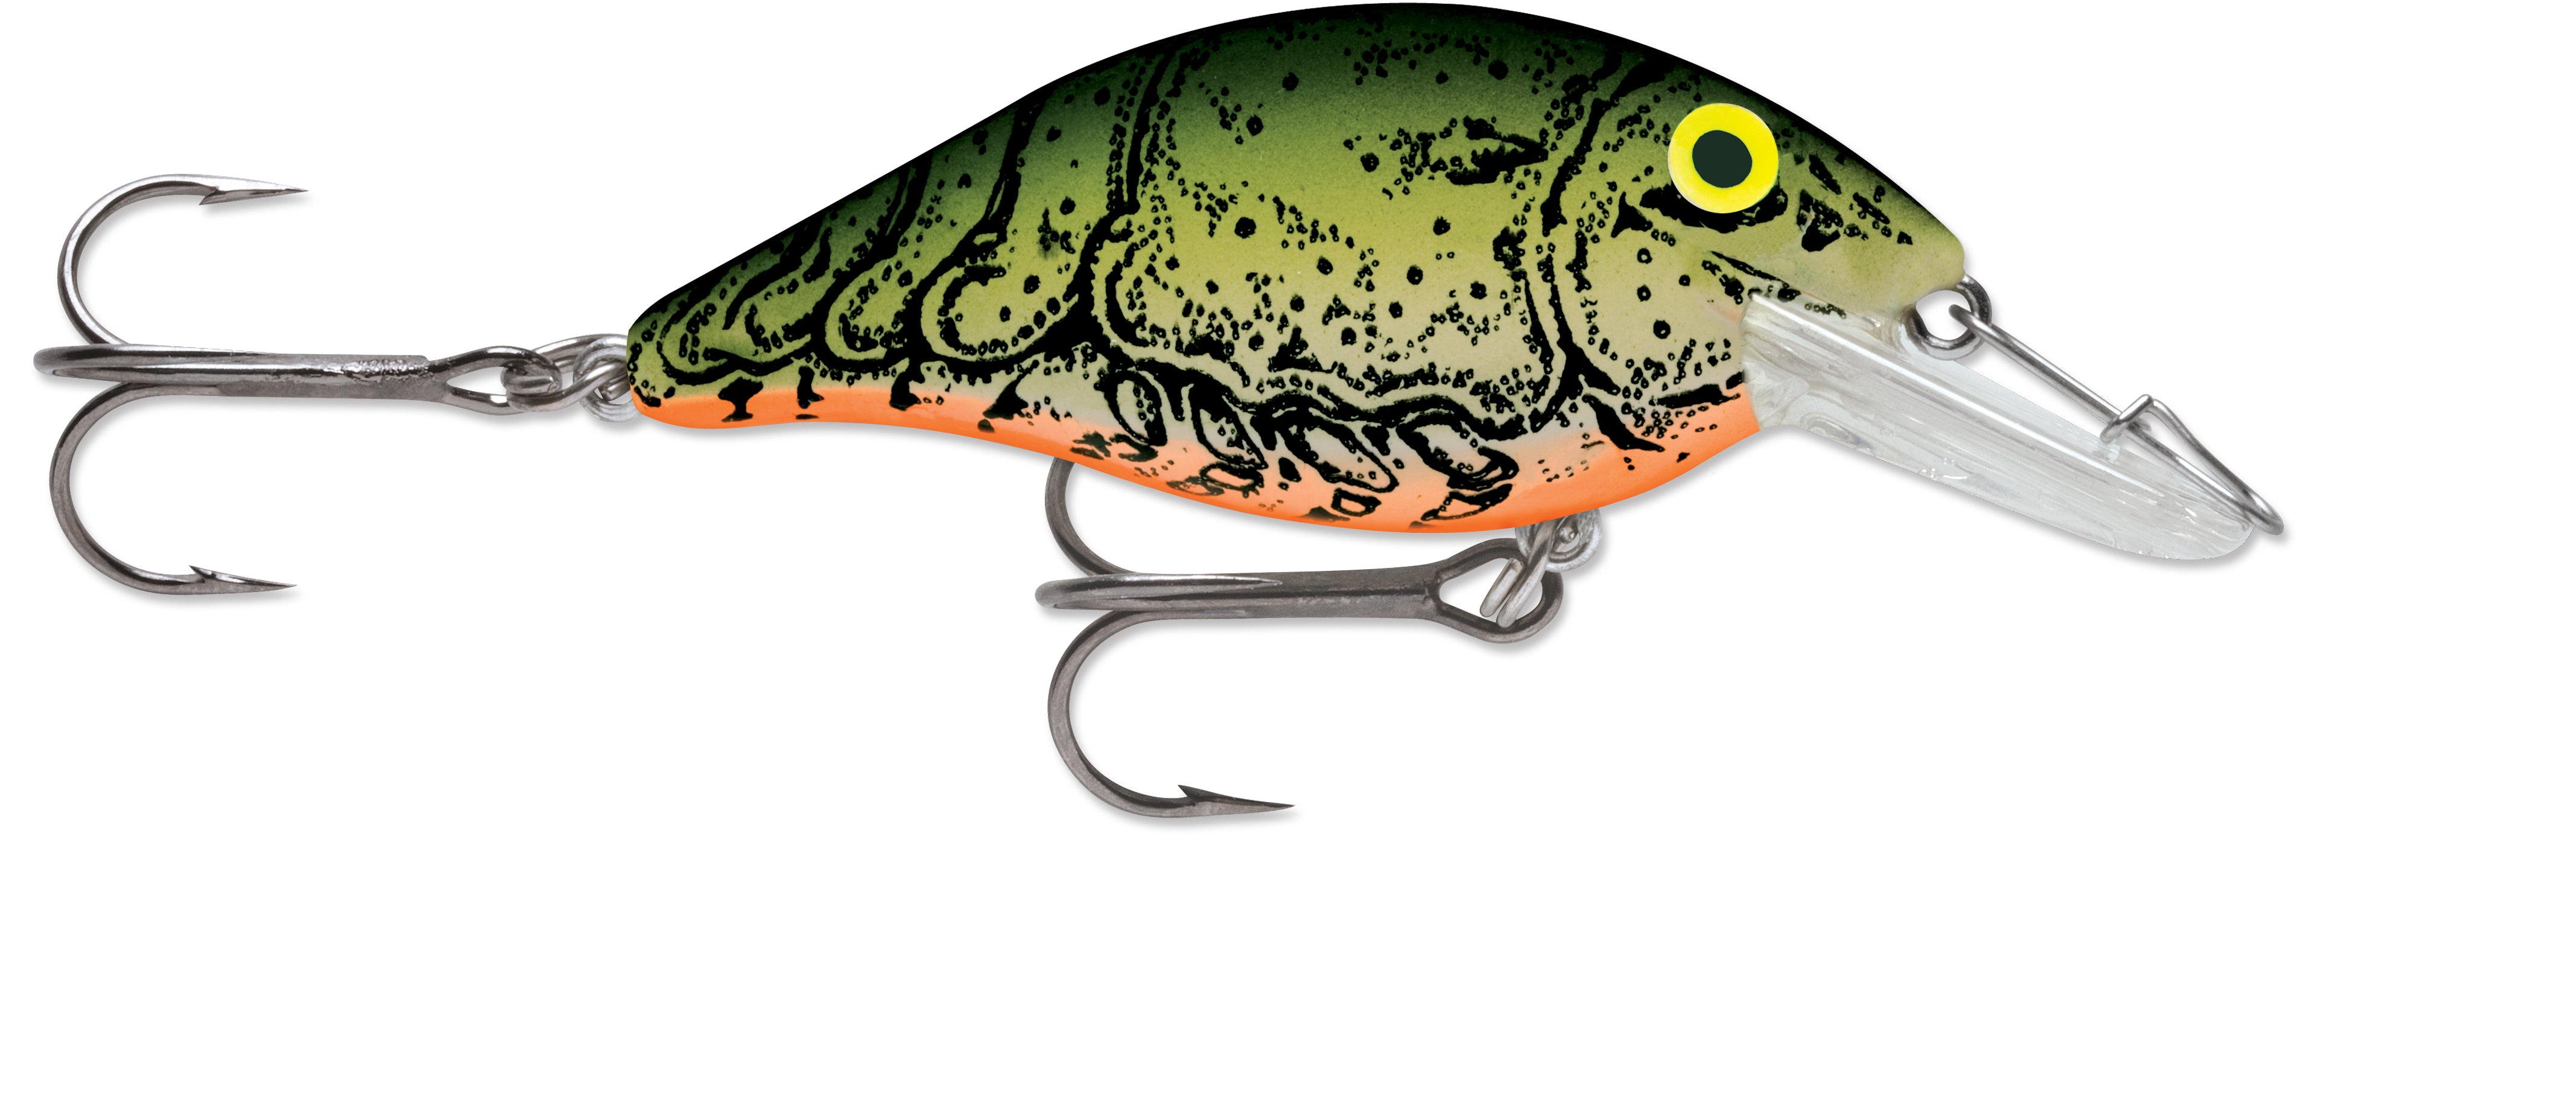 Speed Trap_Green River Crawfish*